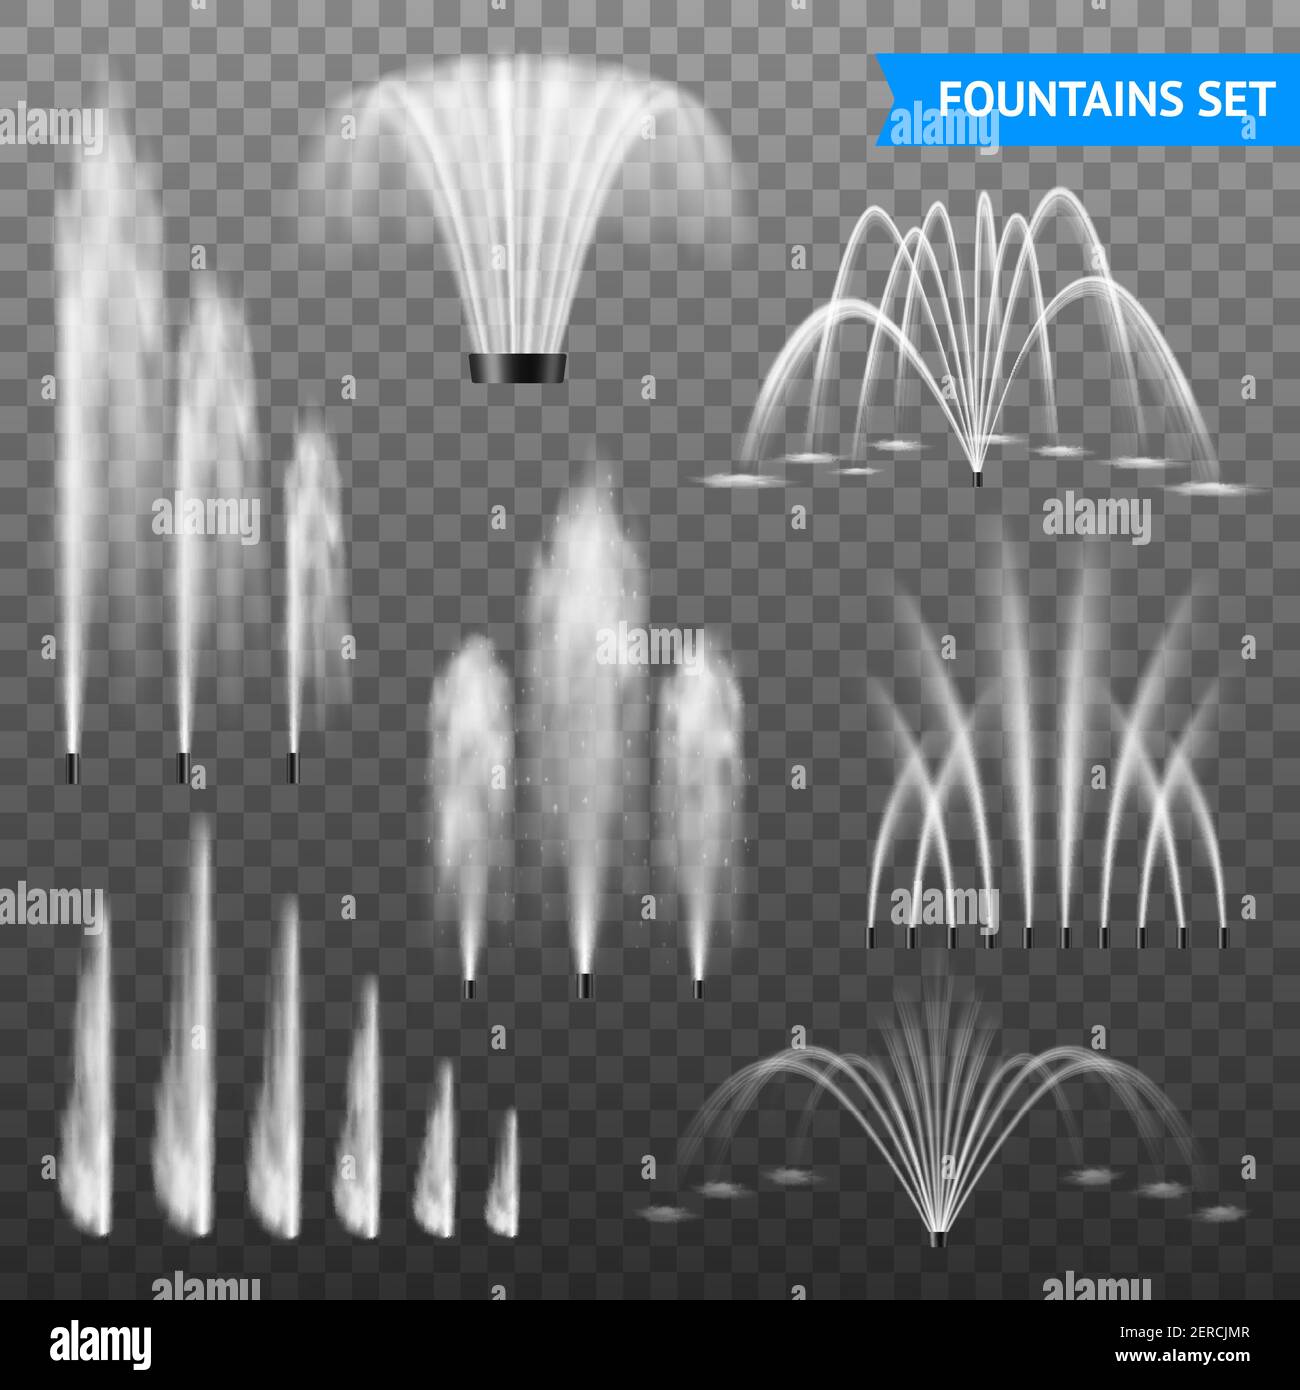 Fontane decorative per l'acqua all'aperto jet set di 7 diverse forme intervallo di dimensioni rispetto a un'illustrazione vettoriale trasparente di sfondo Illustrazione Vettoriale